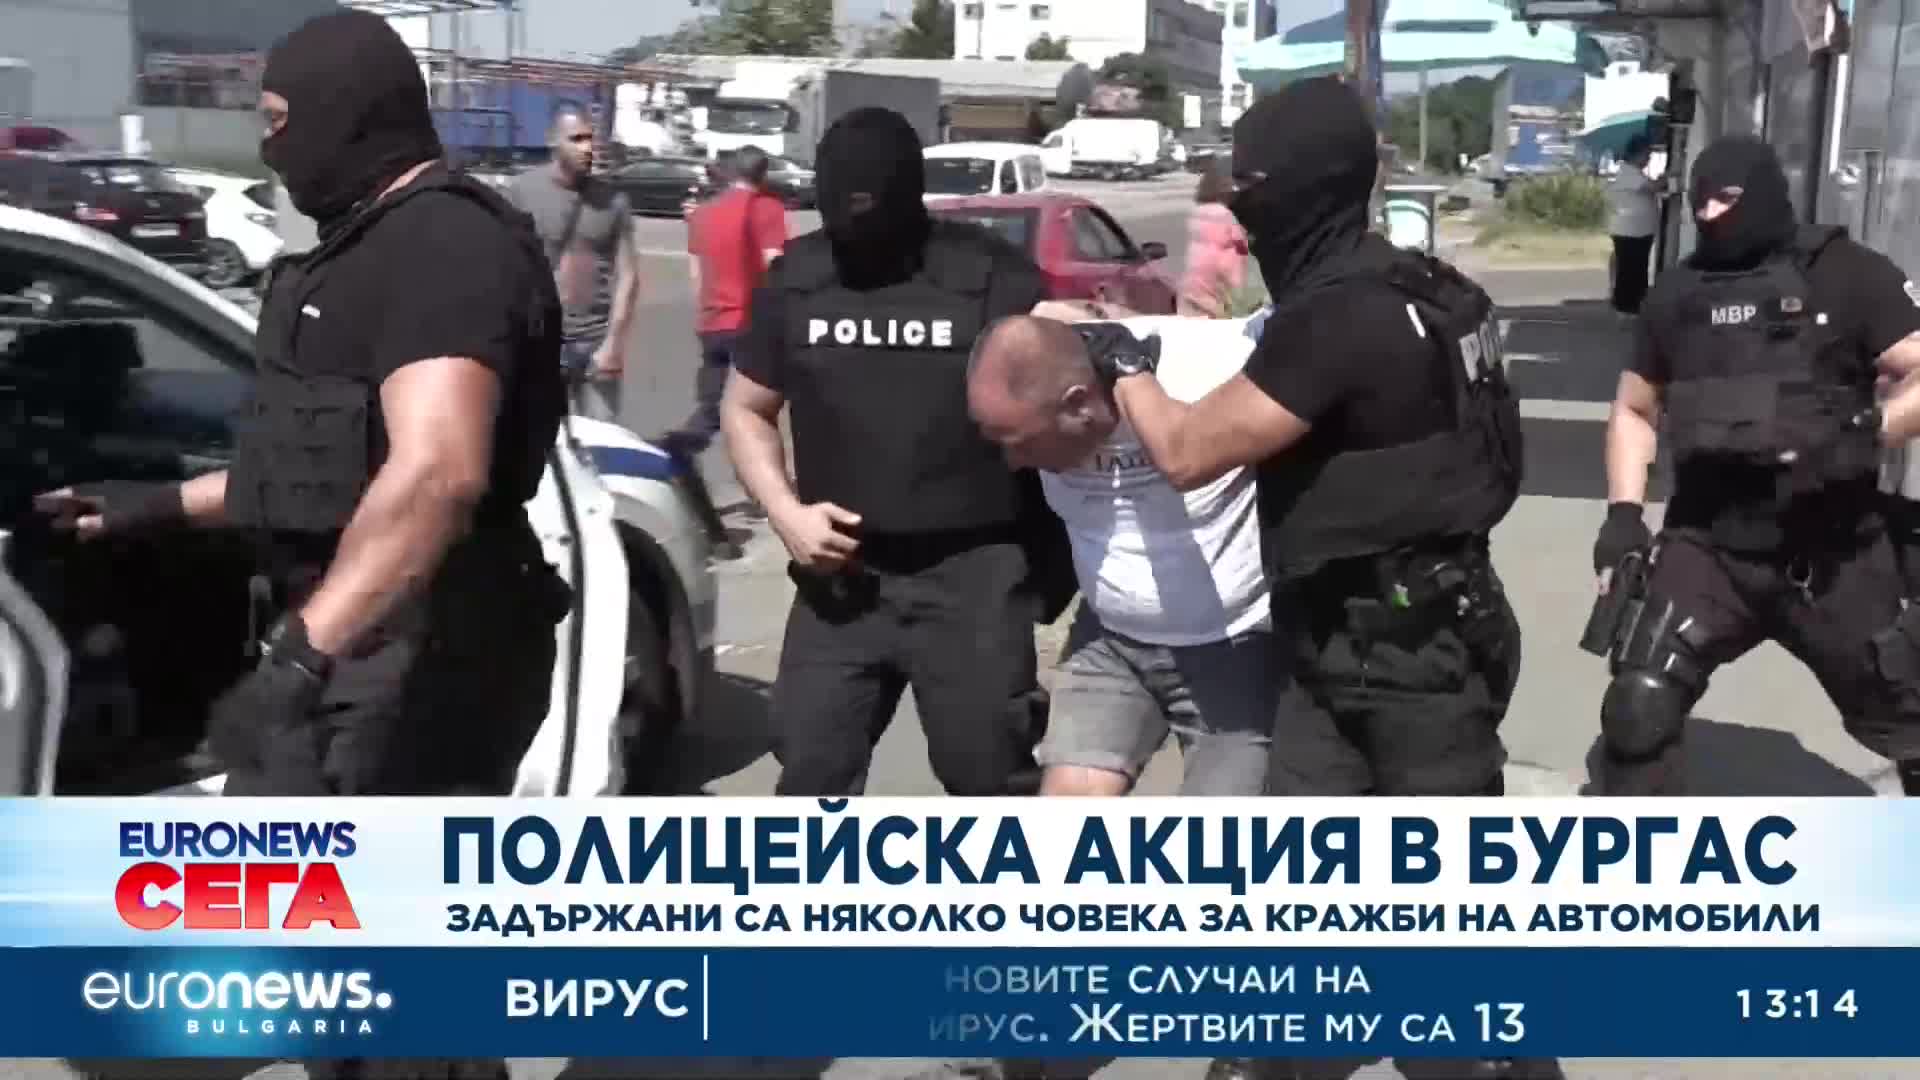 Полицейска акция в Бургас: Няколко човека за задържани за кражба на автомобили